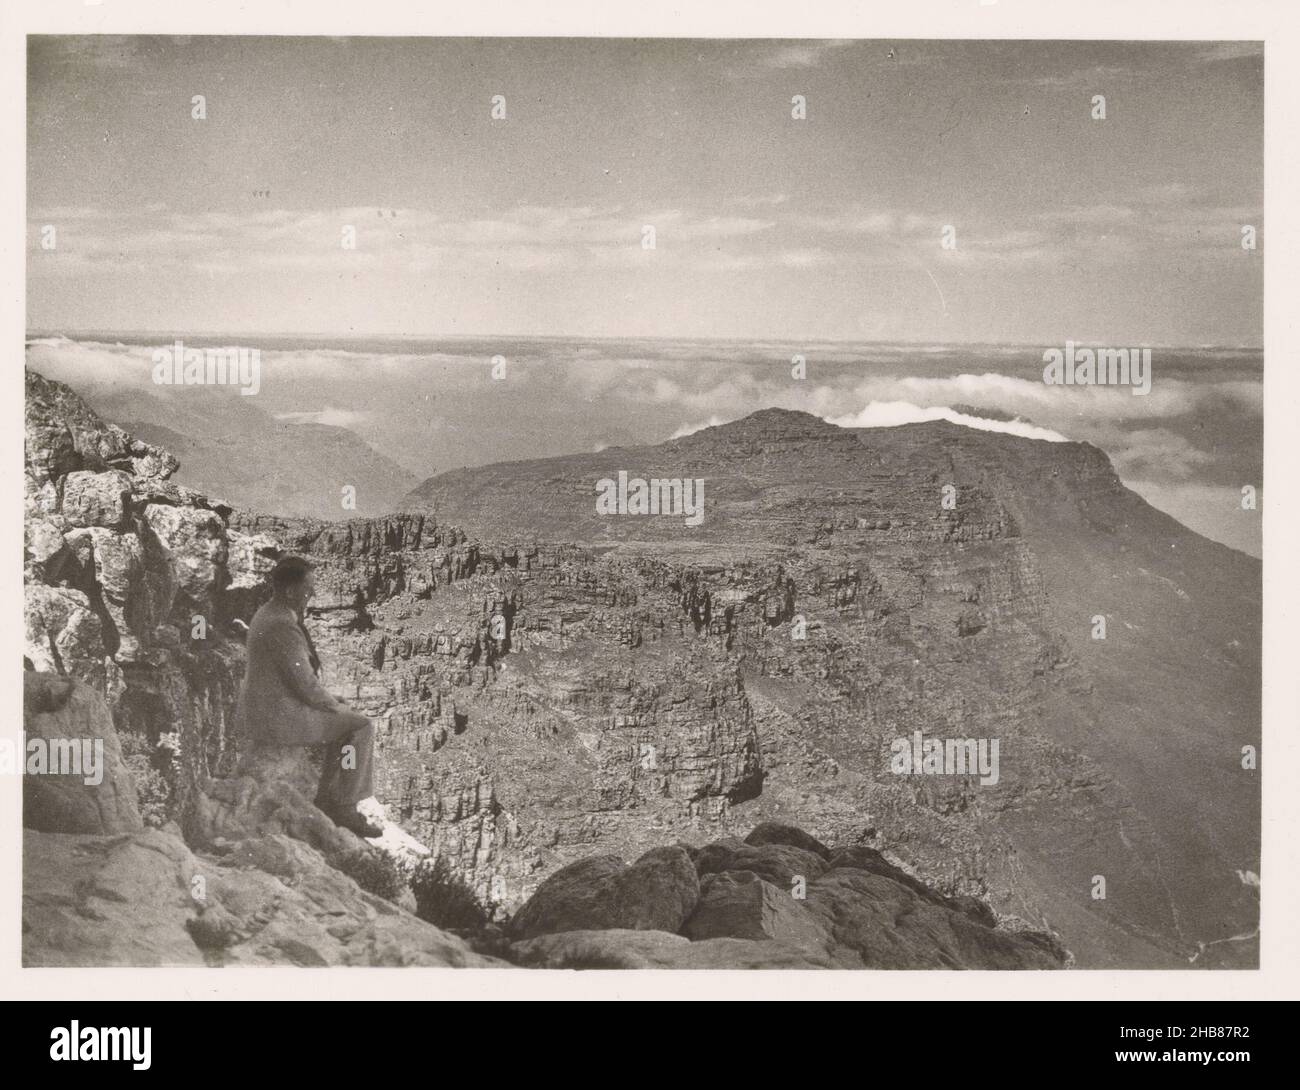 Vista di Table Mountain e dei dodici Apostoli a Città del Capo, creatore: Blackshaw, Zuid-Afrika, c.. 1940 - c. 1960, supporto fotografico, stampa in argento gelatina, altezza 70 mm x larghezza 91 mm Foto Stock